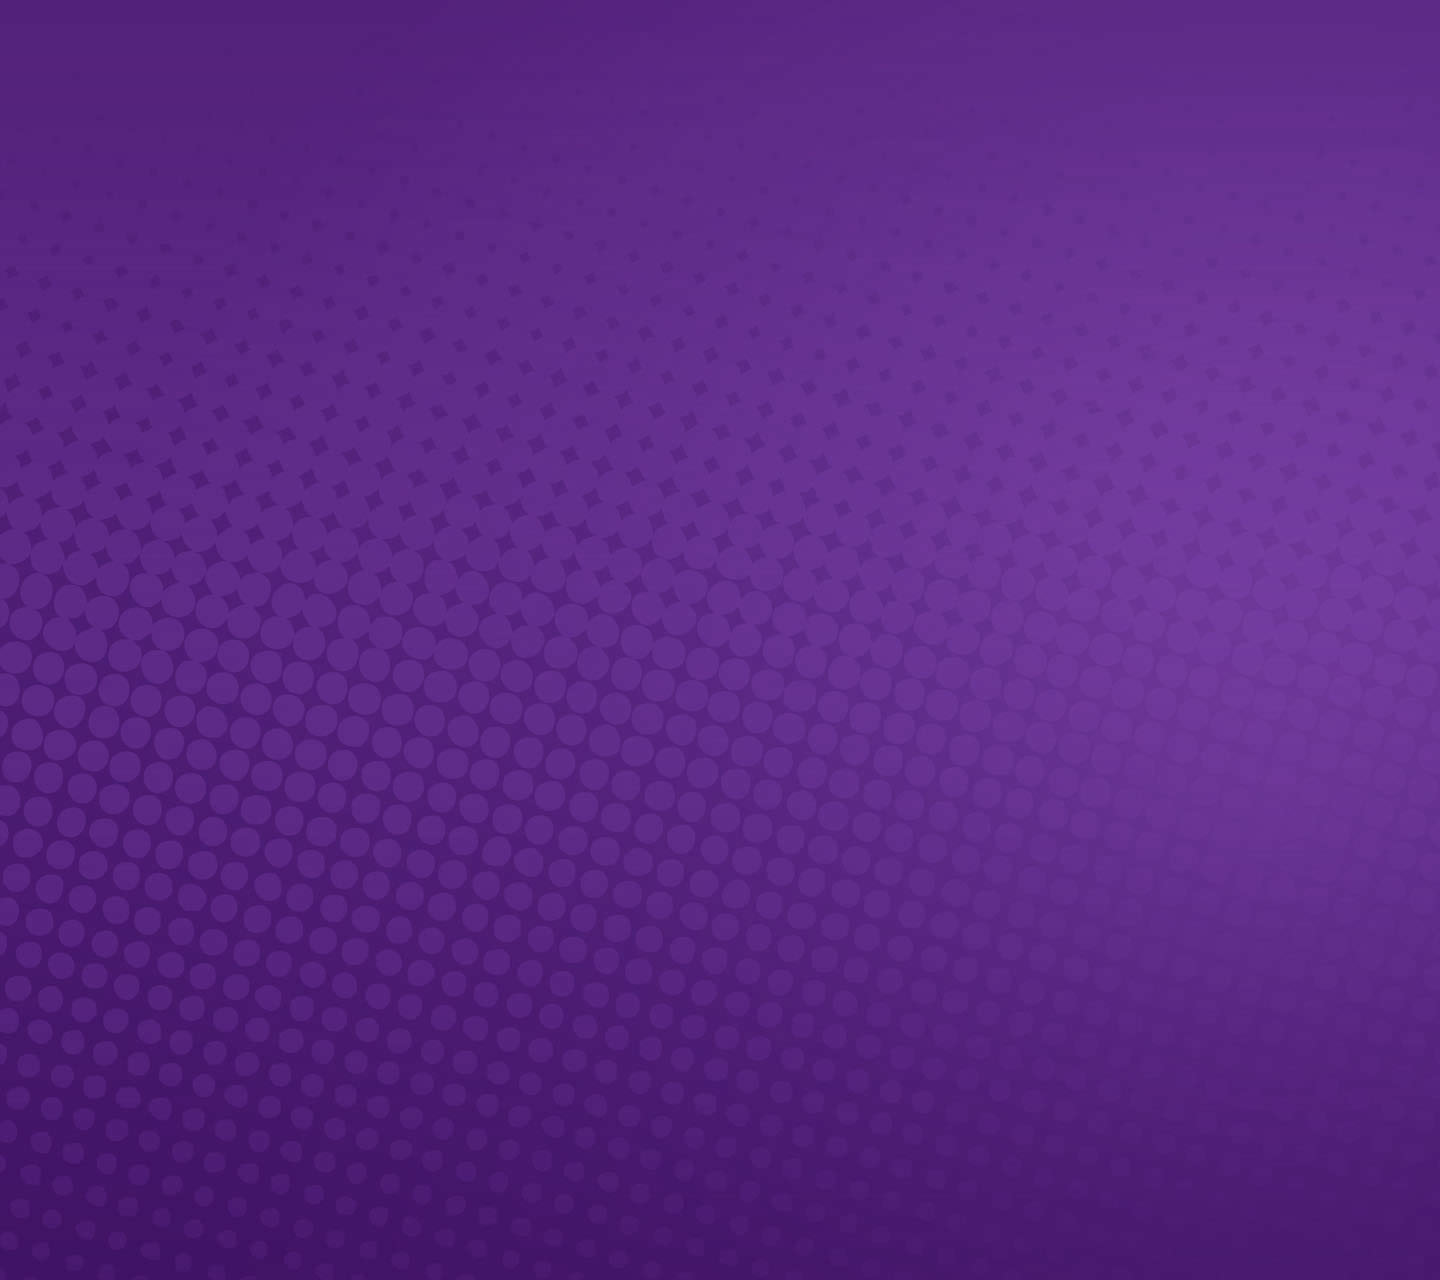 ビビッドなドット柄の紫 Androidスマホ用壁紙 Wallpaperbox